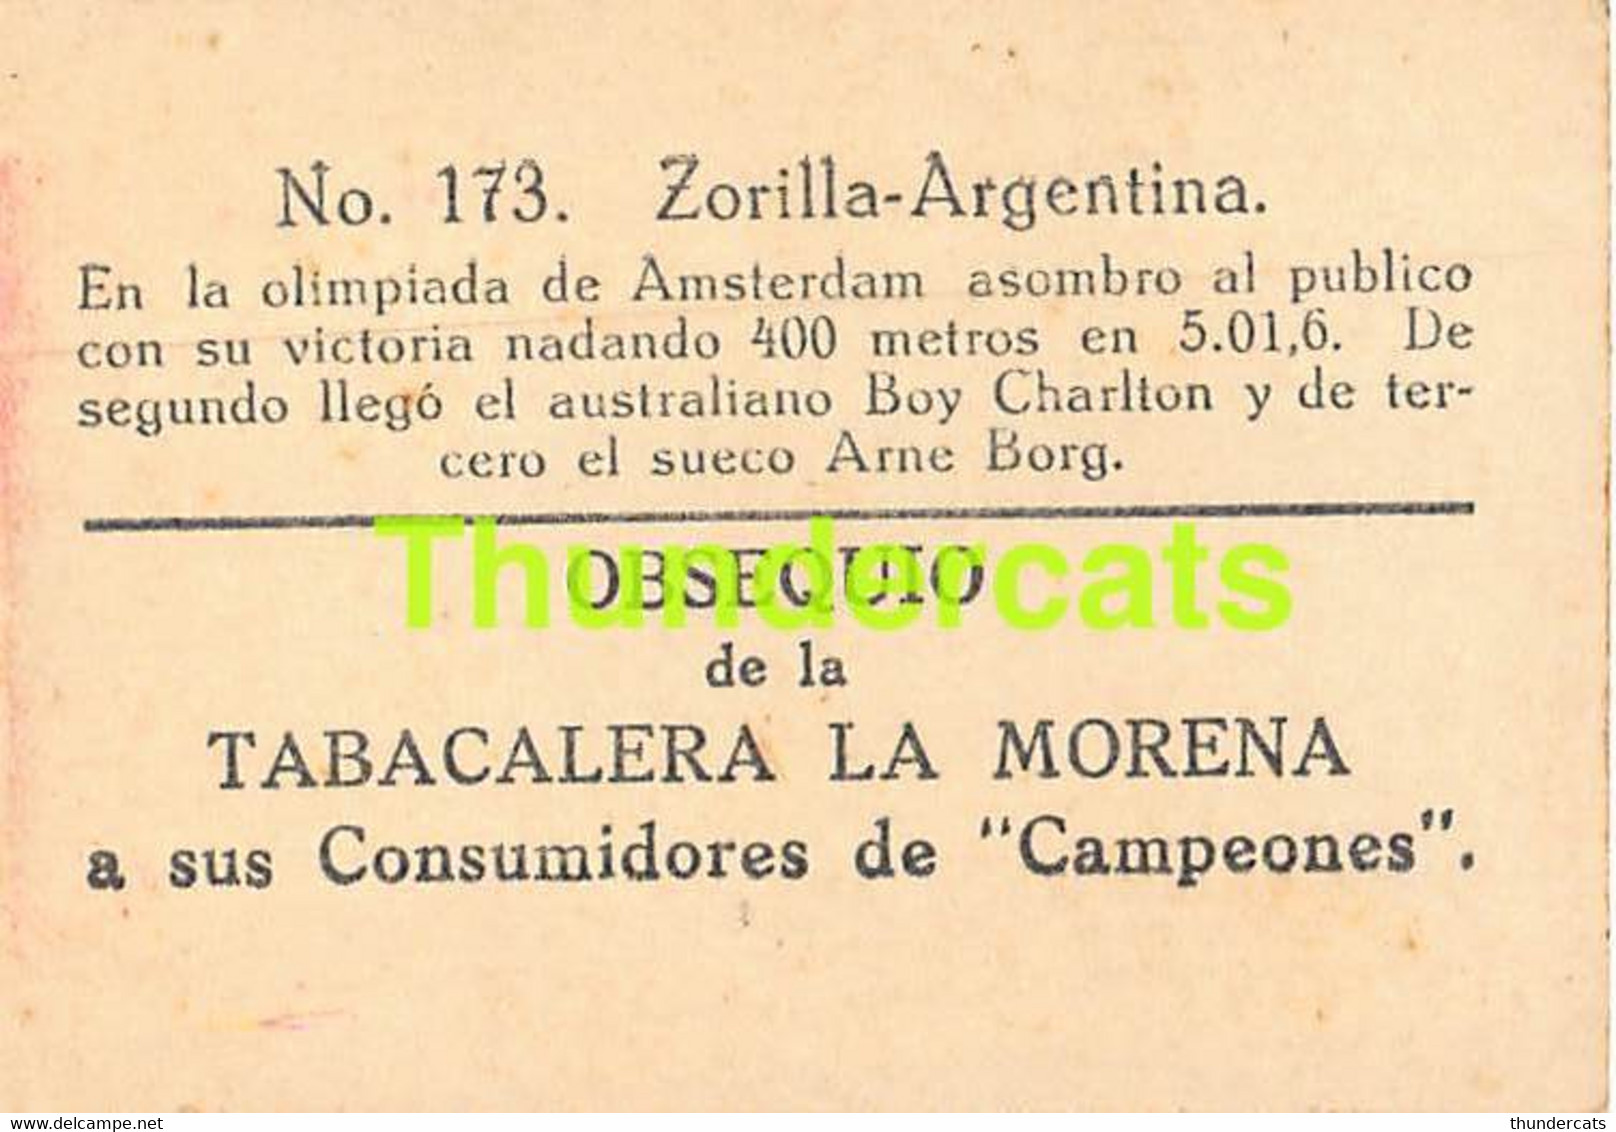 VINTAGE TRADING TOBACCO CARD CHROMO ATHLETICS NATATION SWIMMING 1928 TABACALERA LA MORENA No 173 ZORILLA ARGENTINA - Natación